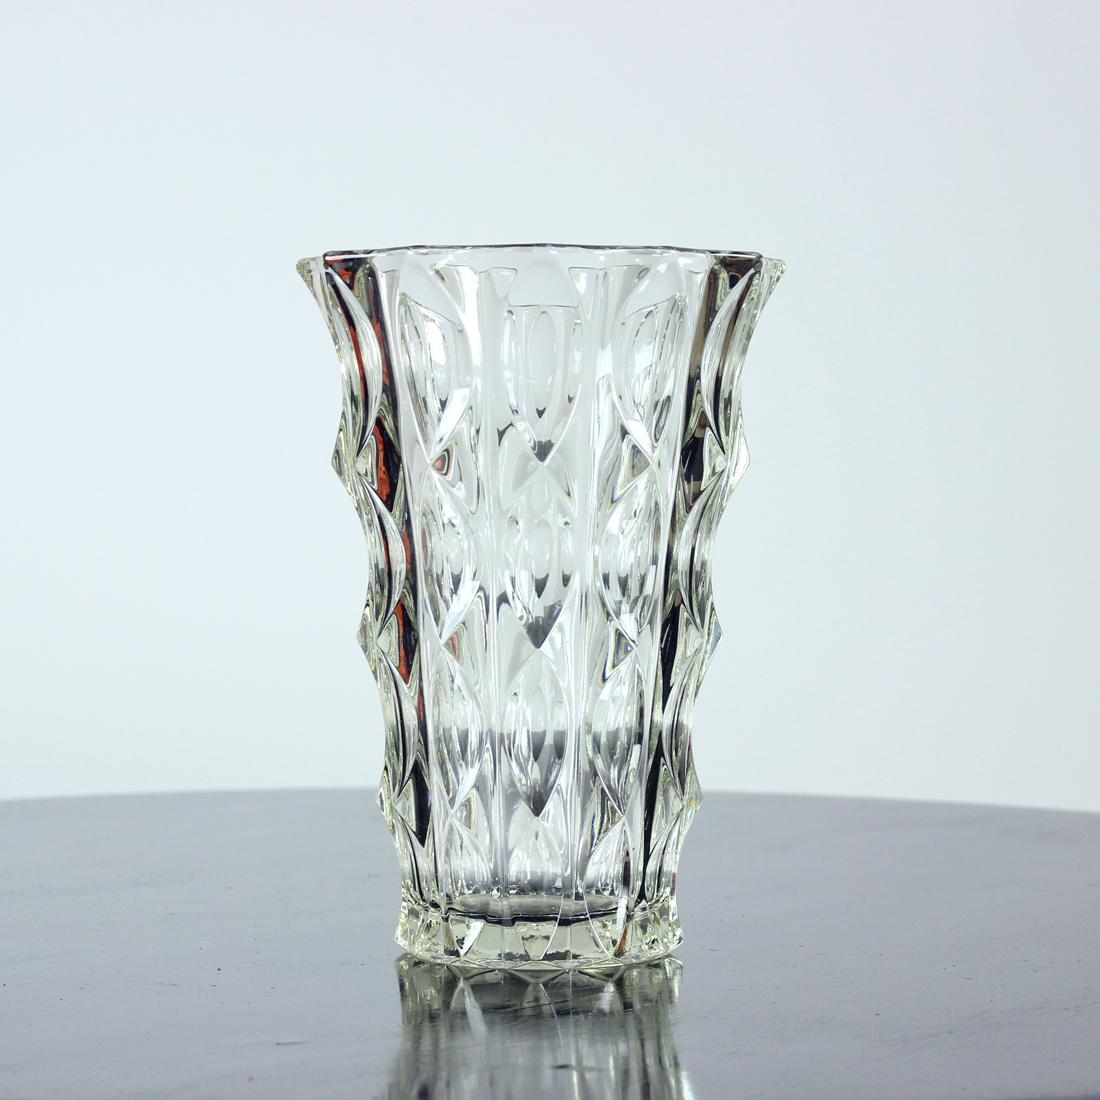 Grand vase vintage en verre pressé transparent. Produit dans les années 1960 par Rosice, conçu par Vladislav Urban. Belle pièce en très bon état sans aucune trace d'usure. Les verriers tchèques de l'époque du milieu du siècle ont produit des objets